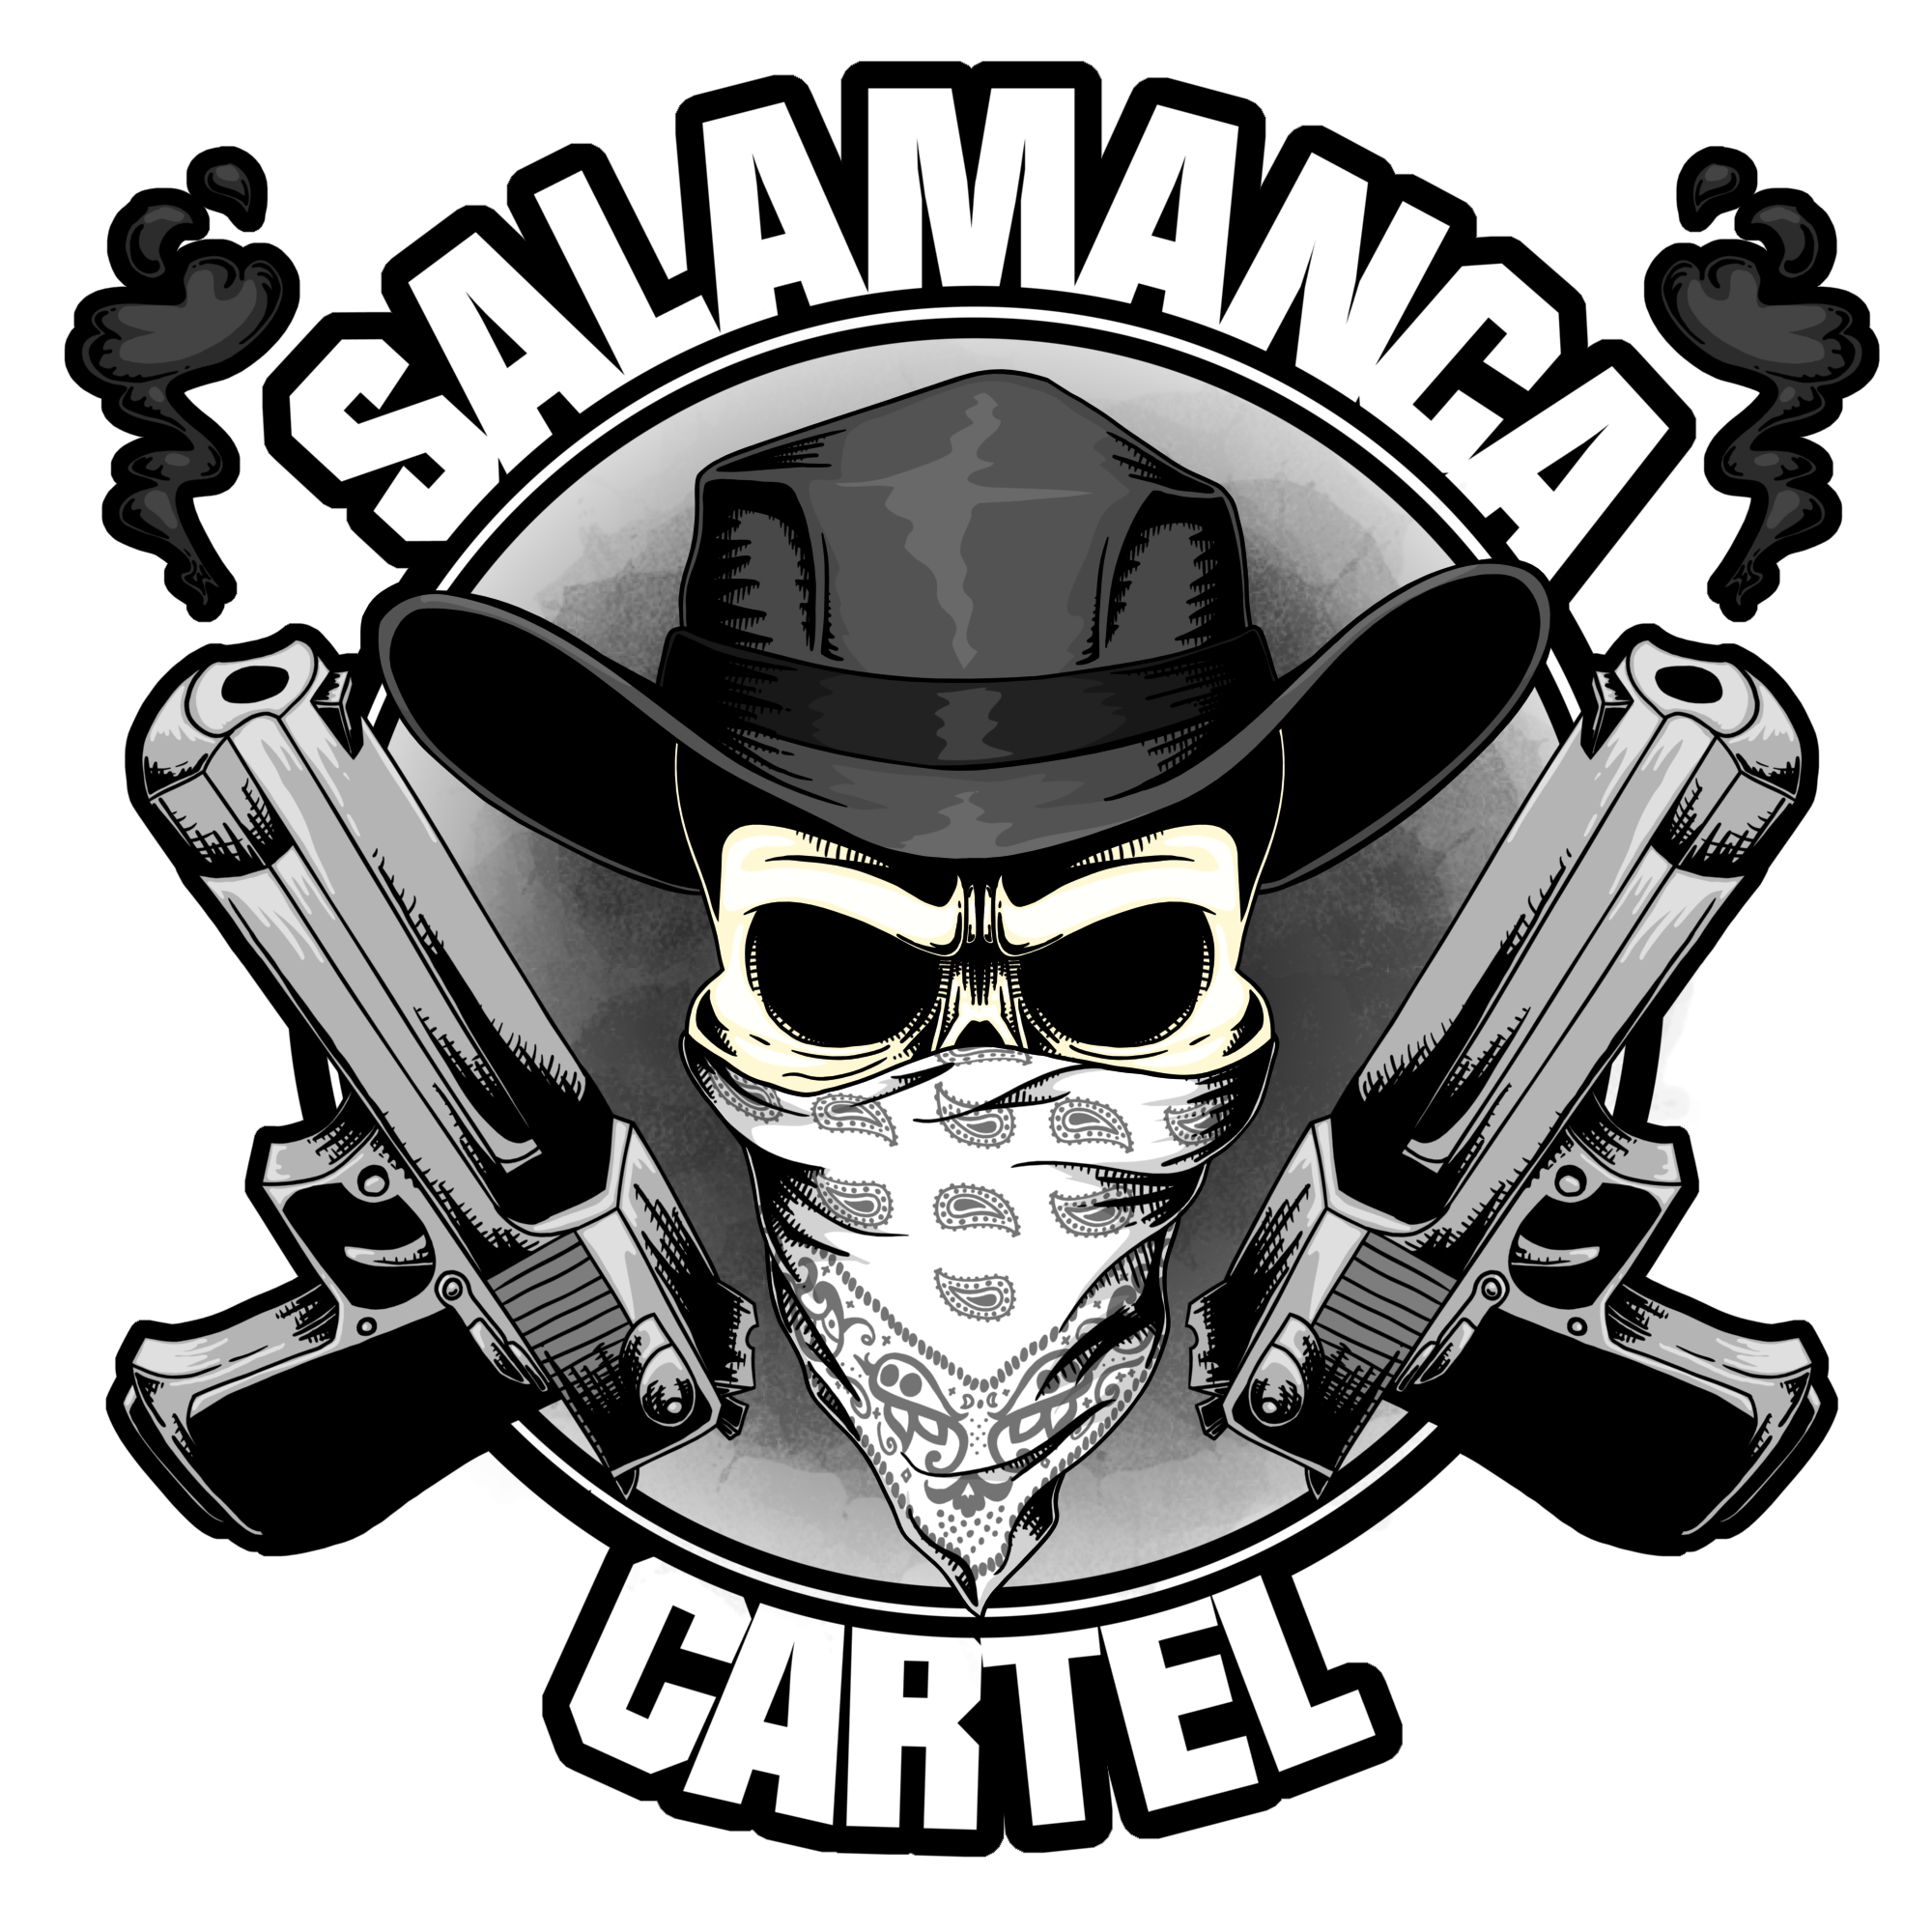 The Salamanca Cartel Logo